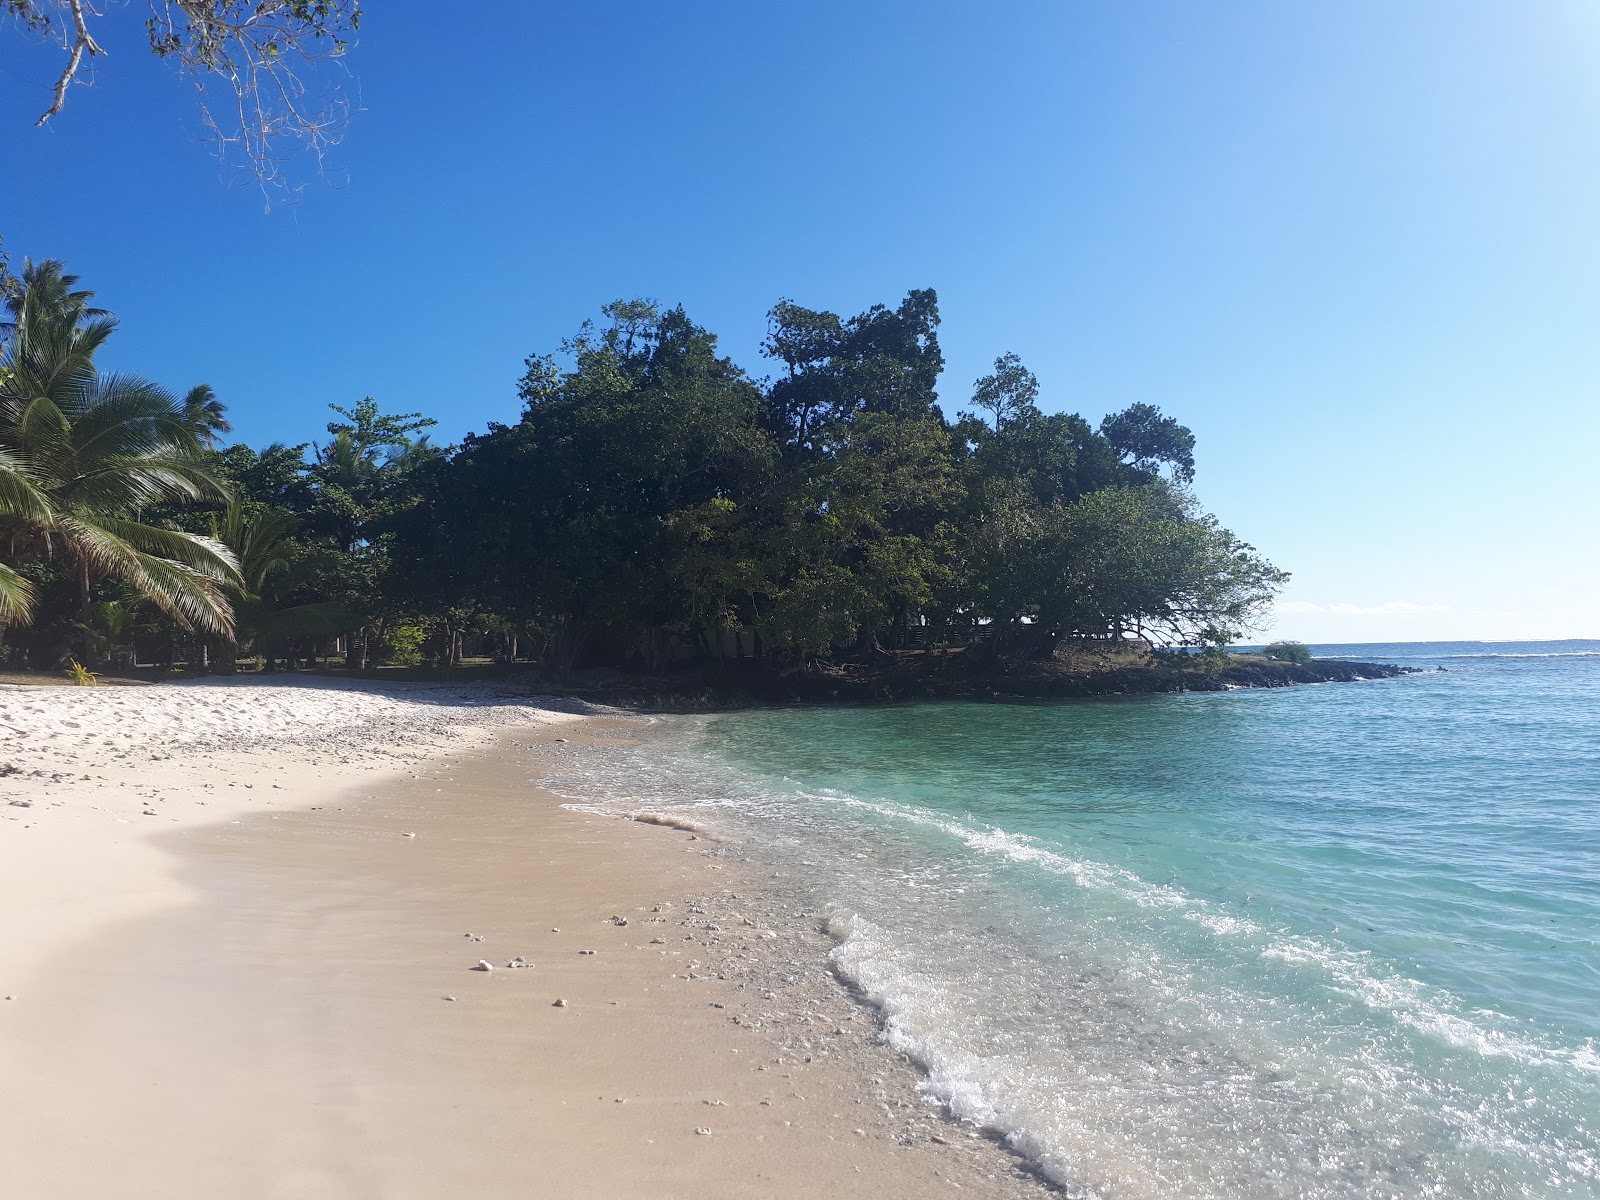 Zdjęcie Eratap Beach - popularne miejsce wśród znawców relaksu